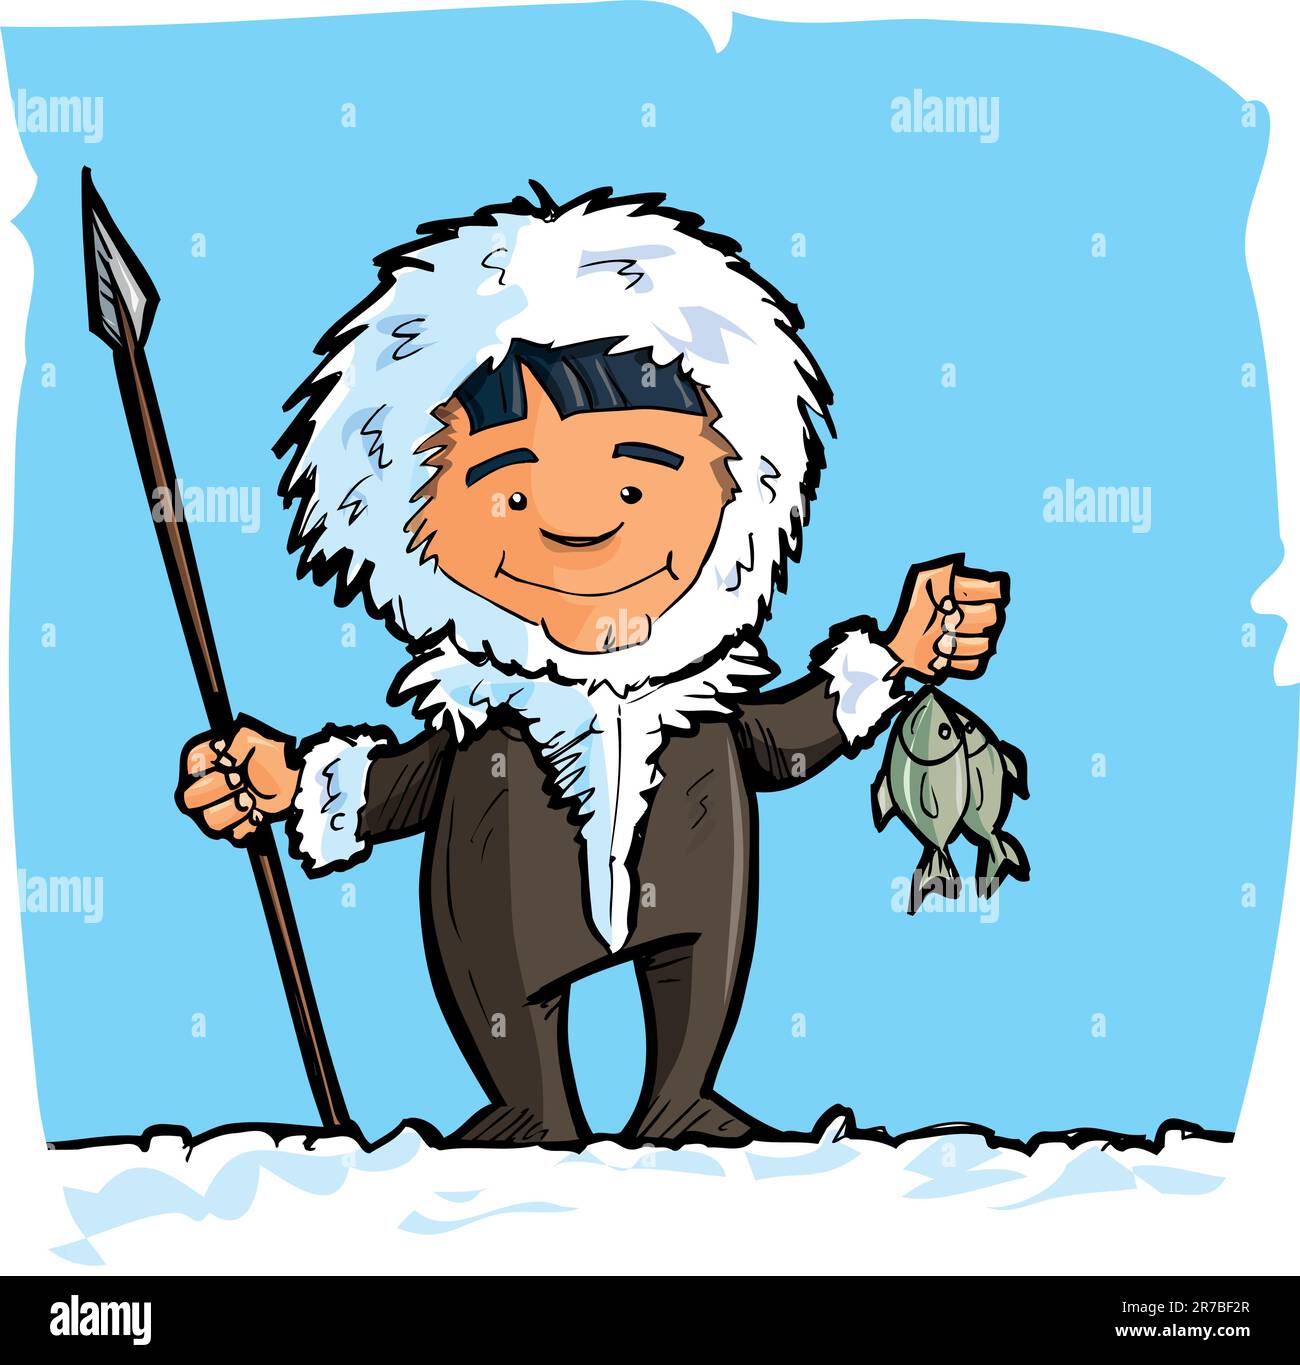 Dessin eskimo avec une lance et un poisson. Ciel bleu et neige derrière Illustration de Vecteur